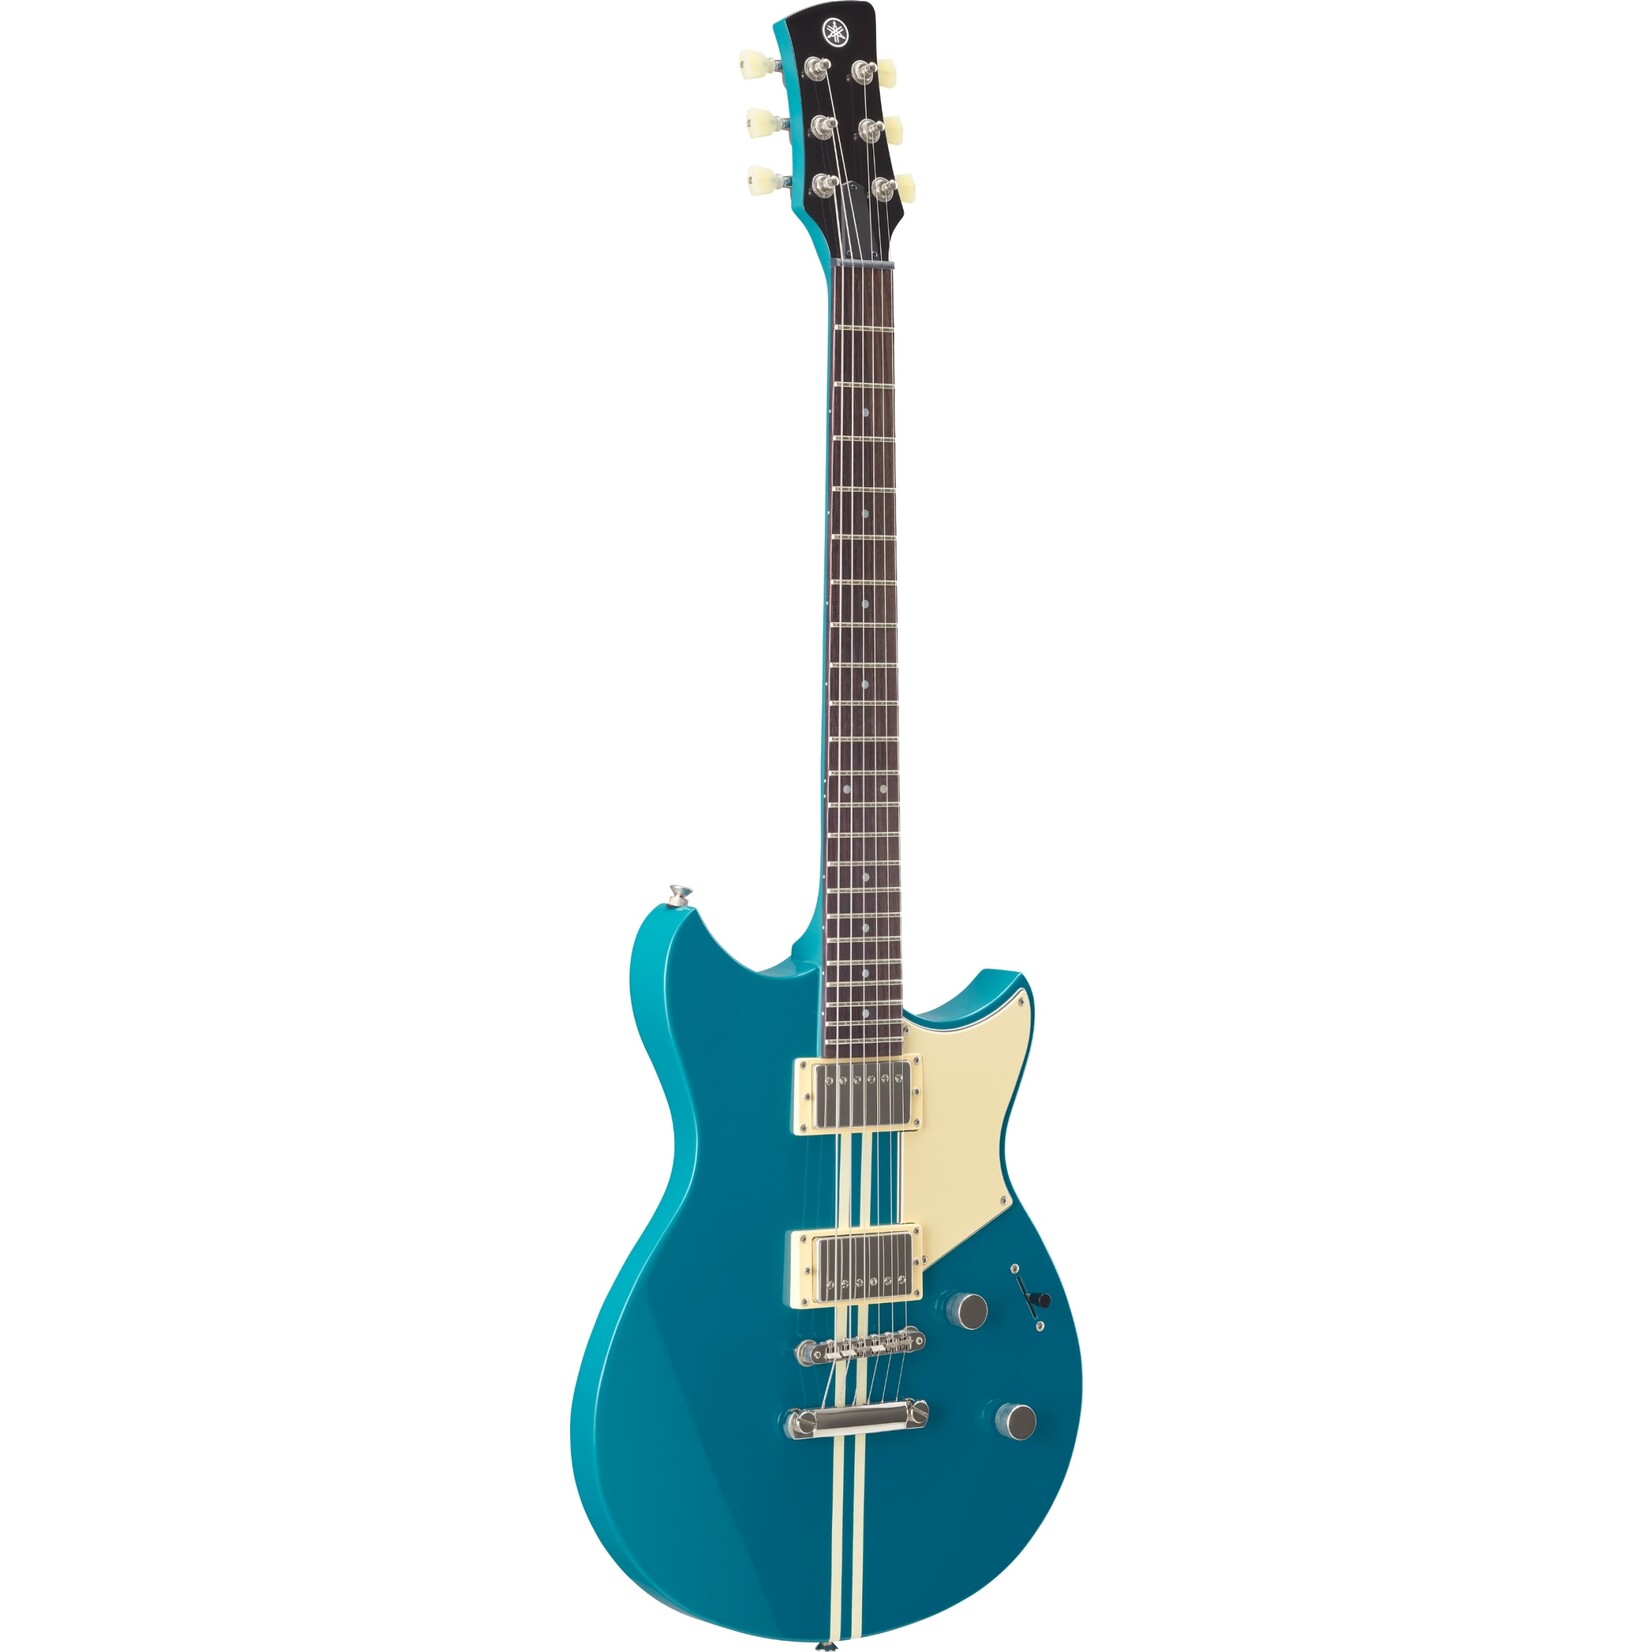 Yamaha Yamaha Revstar Element RSE20 Electric Guitar in Swift Blue